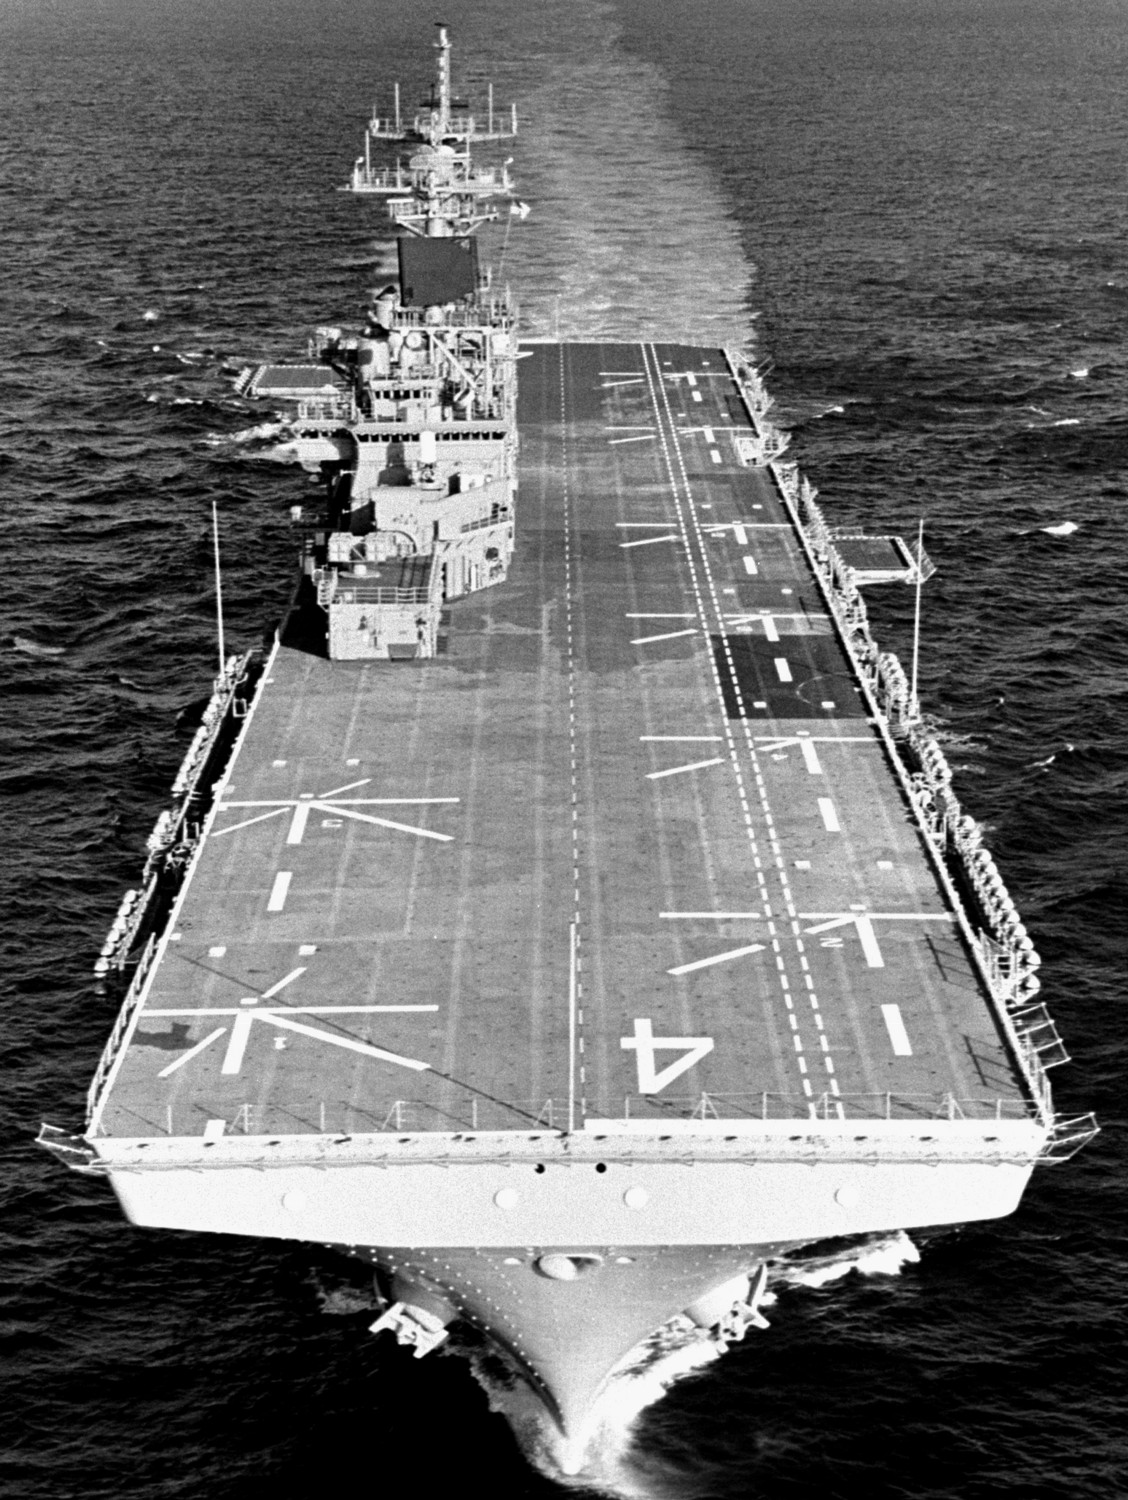 lhd-4 uss boxer wasp class amphibious assault ship dock landing us navy 05